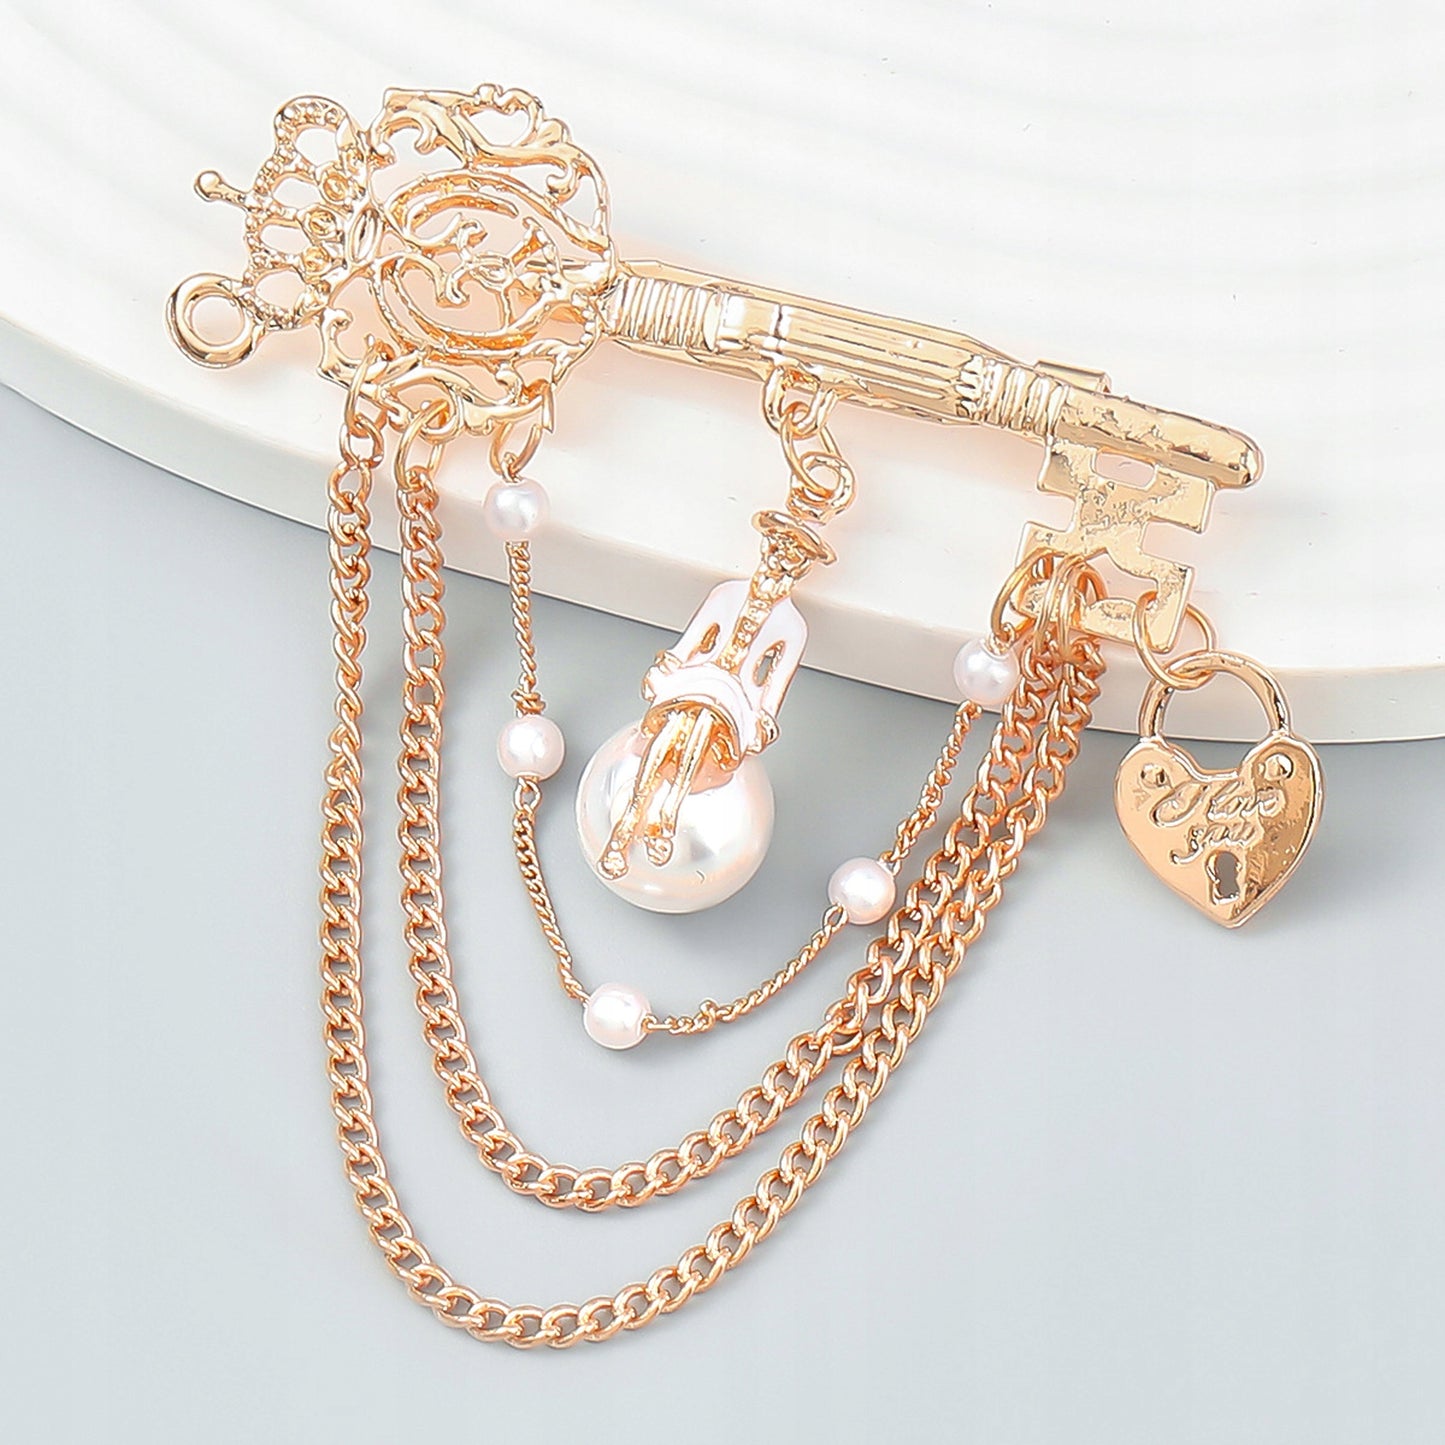 Agrafka - złota broszka z łańcuszkami, kluczem, kłódką i kobietą